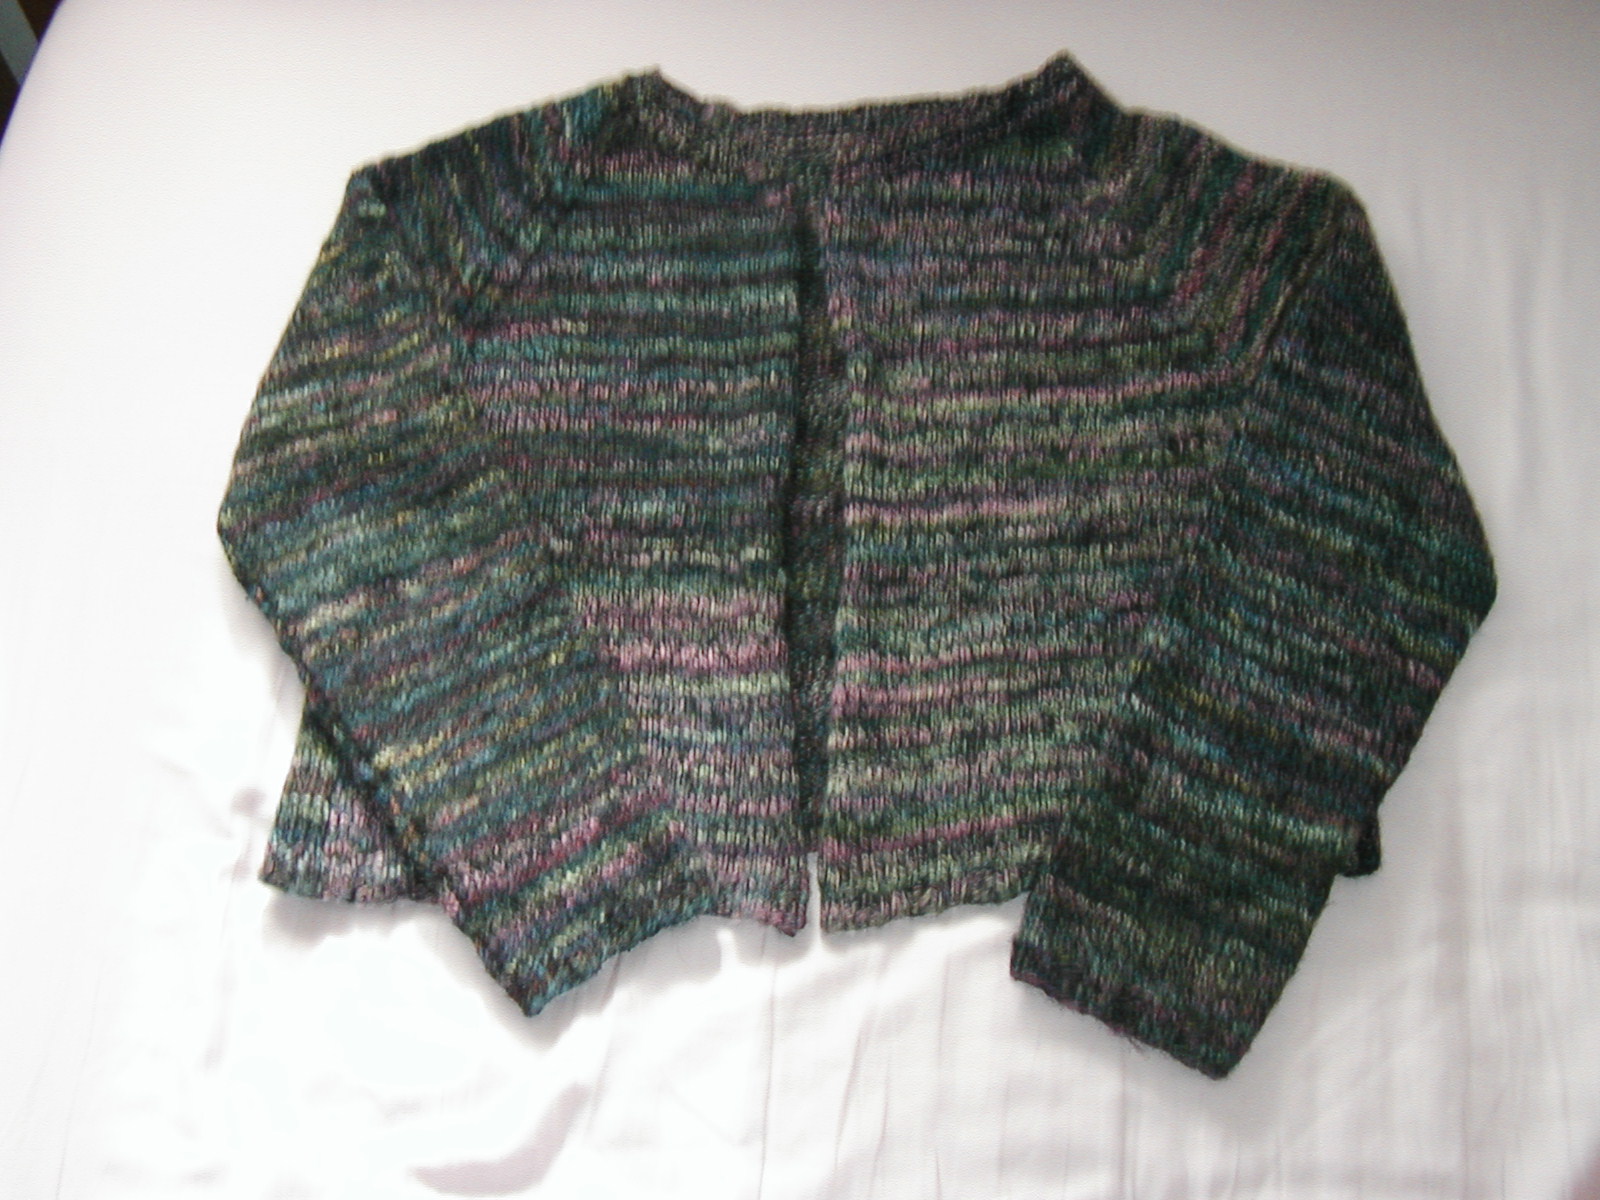 Sweater for Sarah